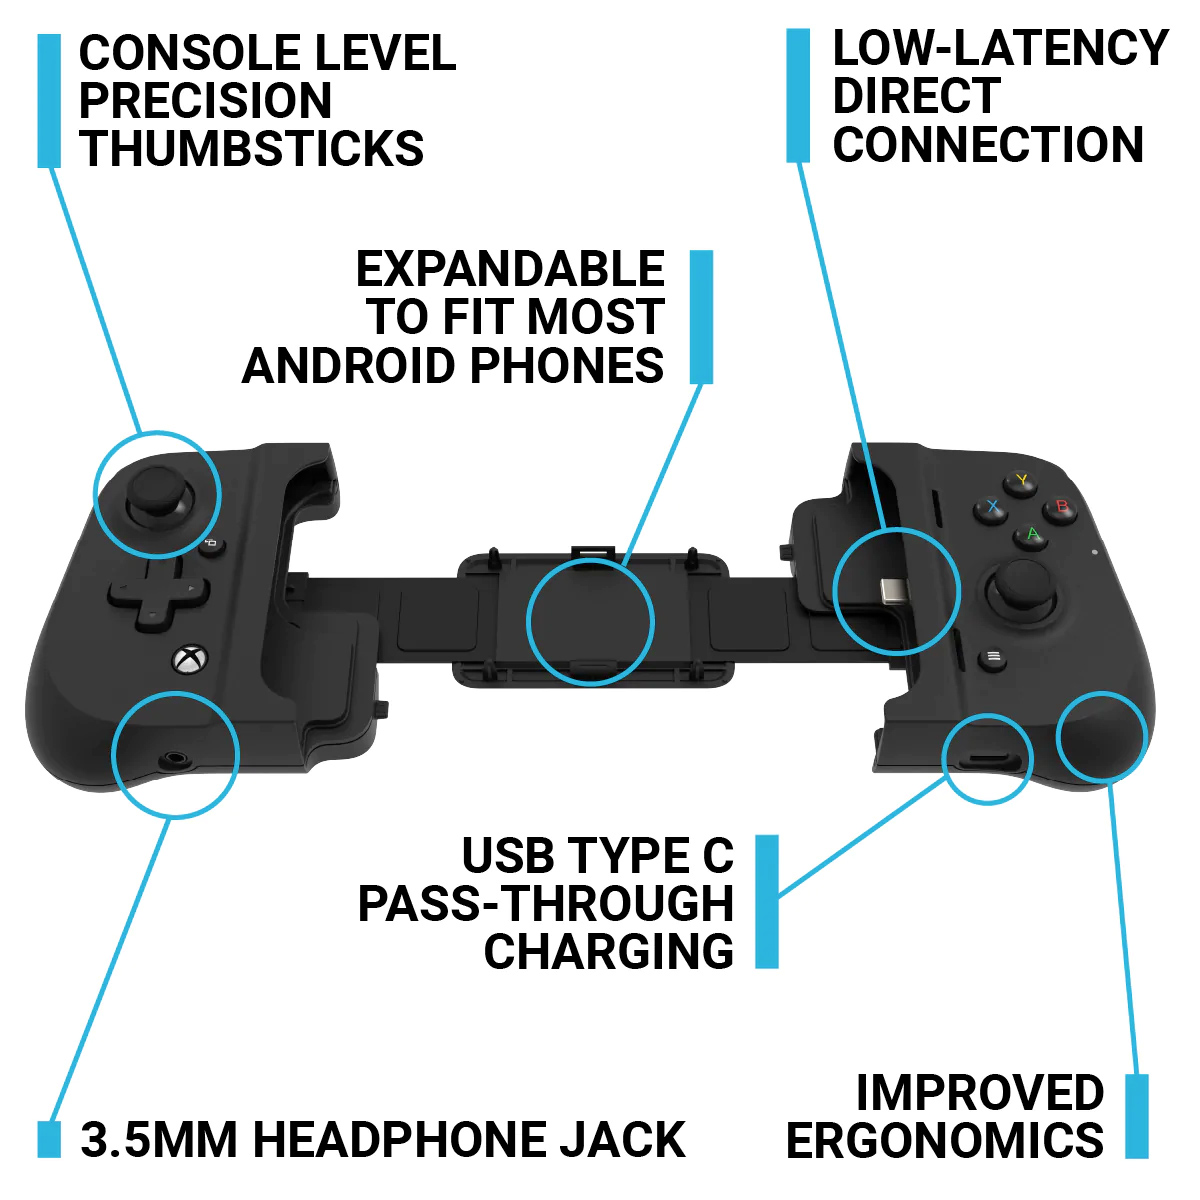 Controle Gamevice Flex Xbox para smartphones com capas